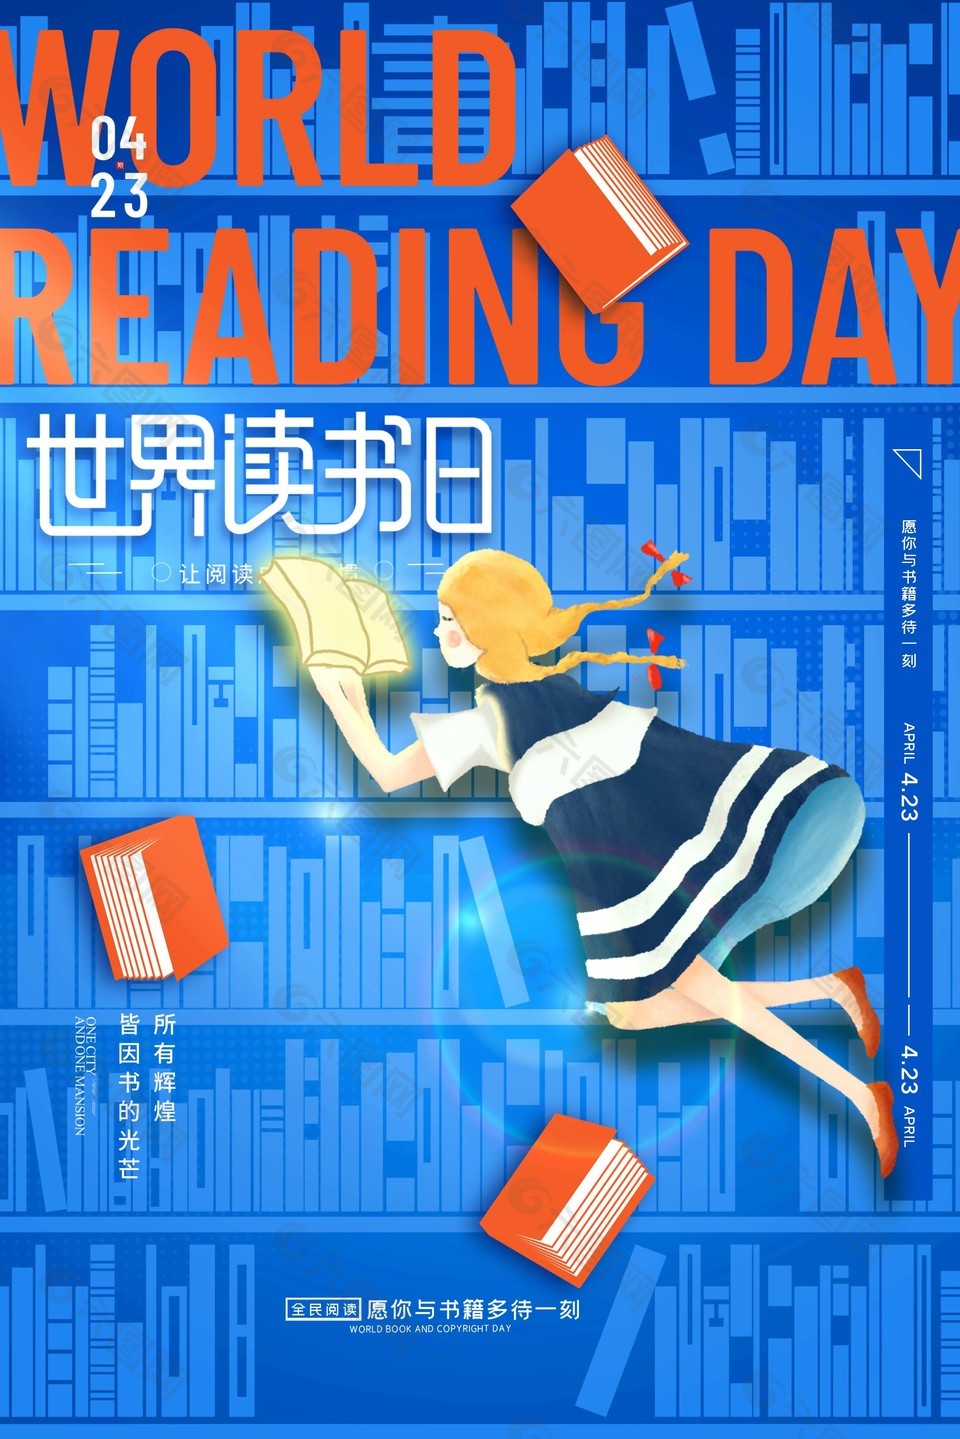 423世界读书日蓝色创意海报素材设计